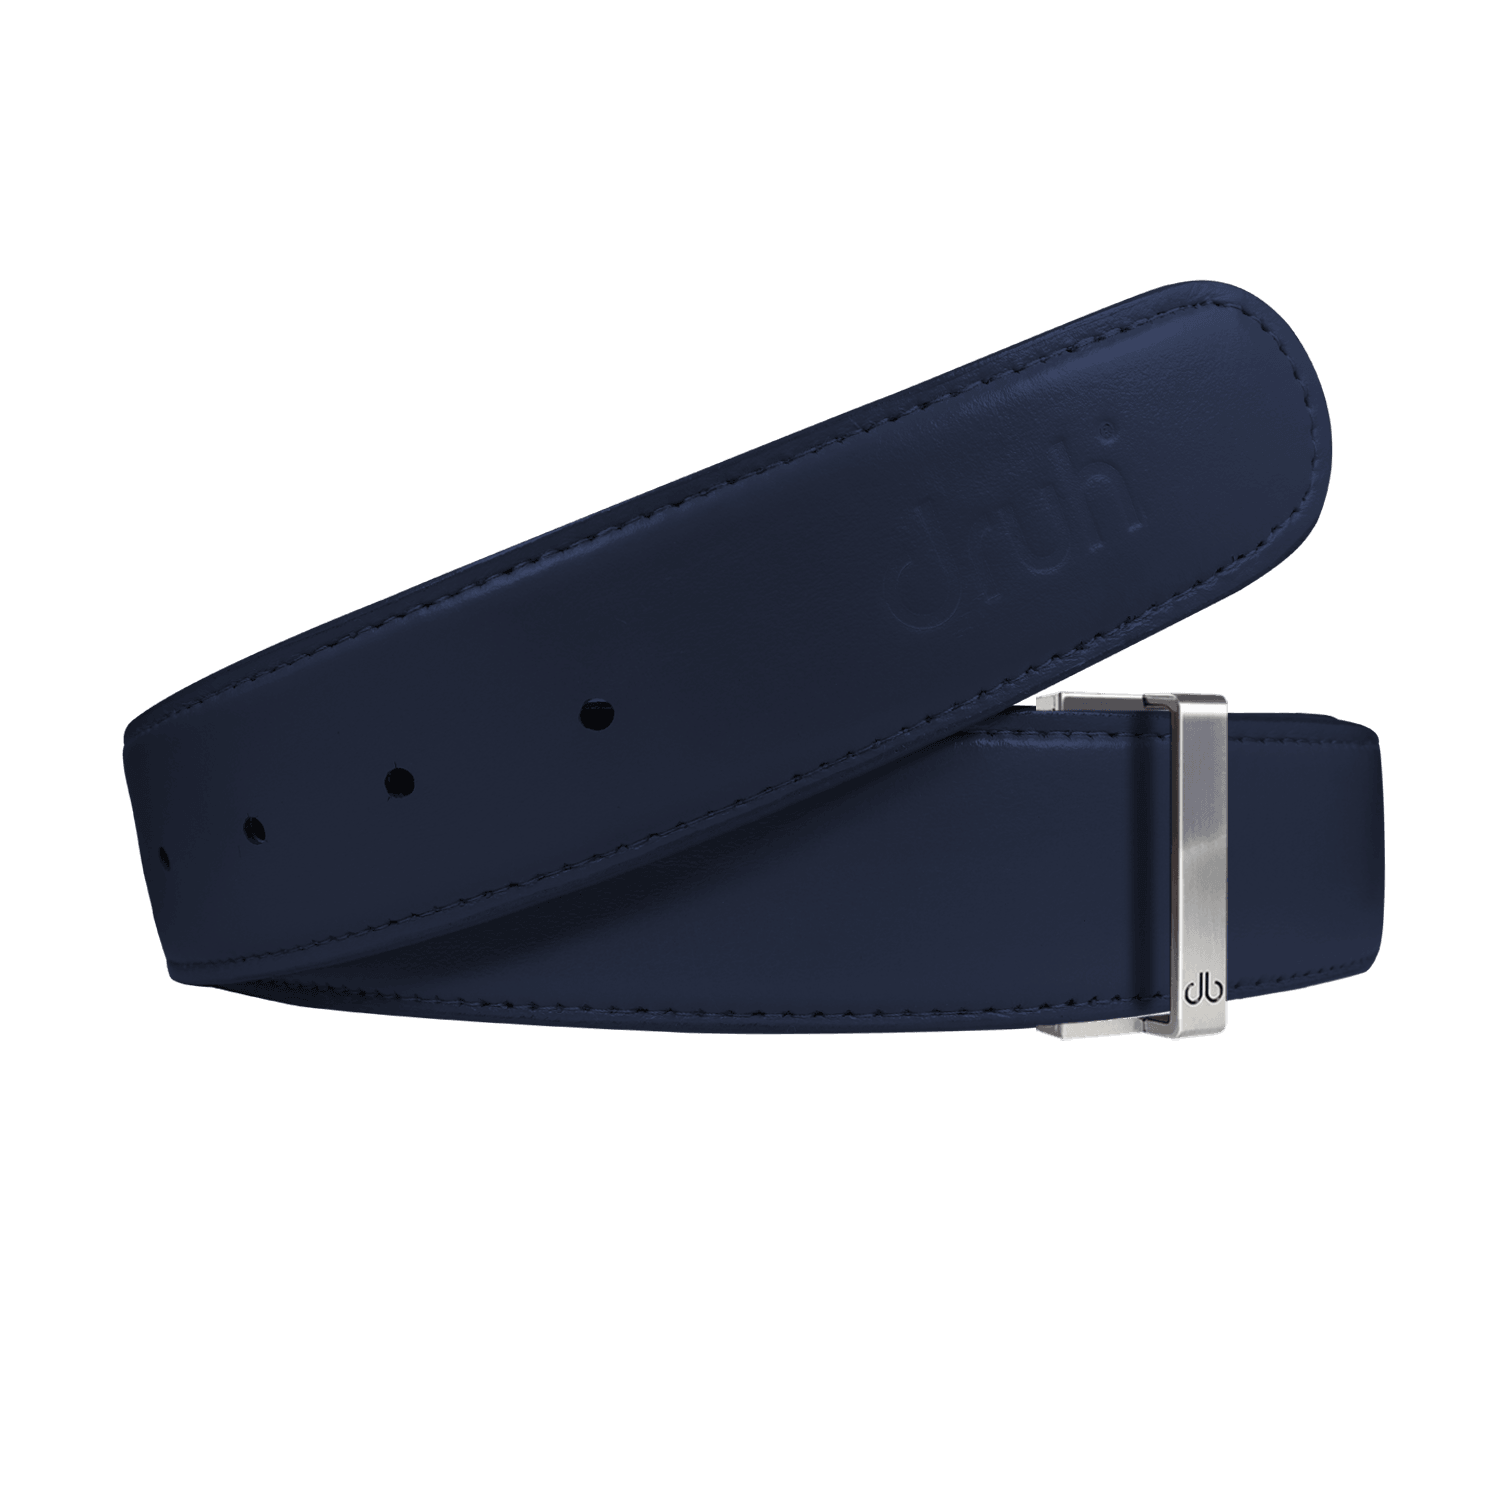 Navy blue leather belt Ugo